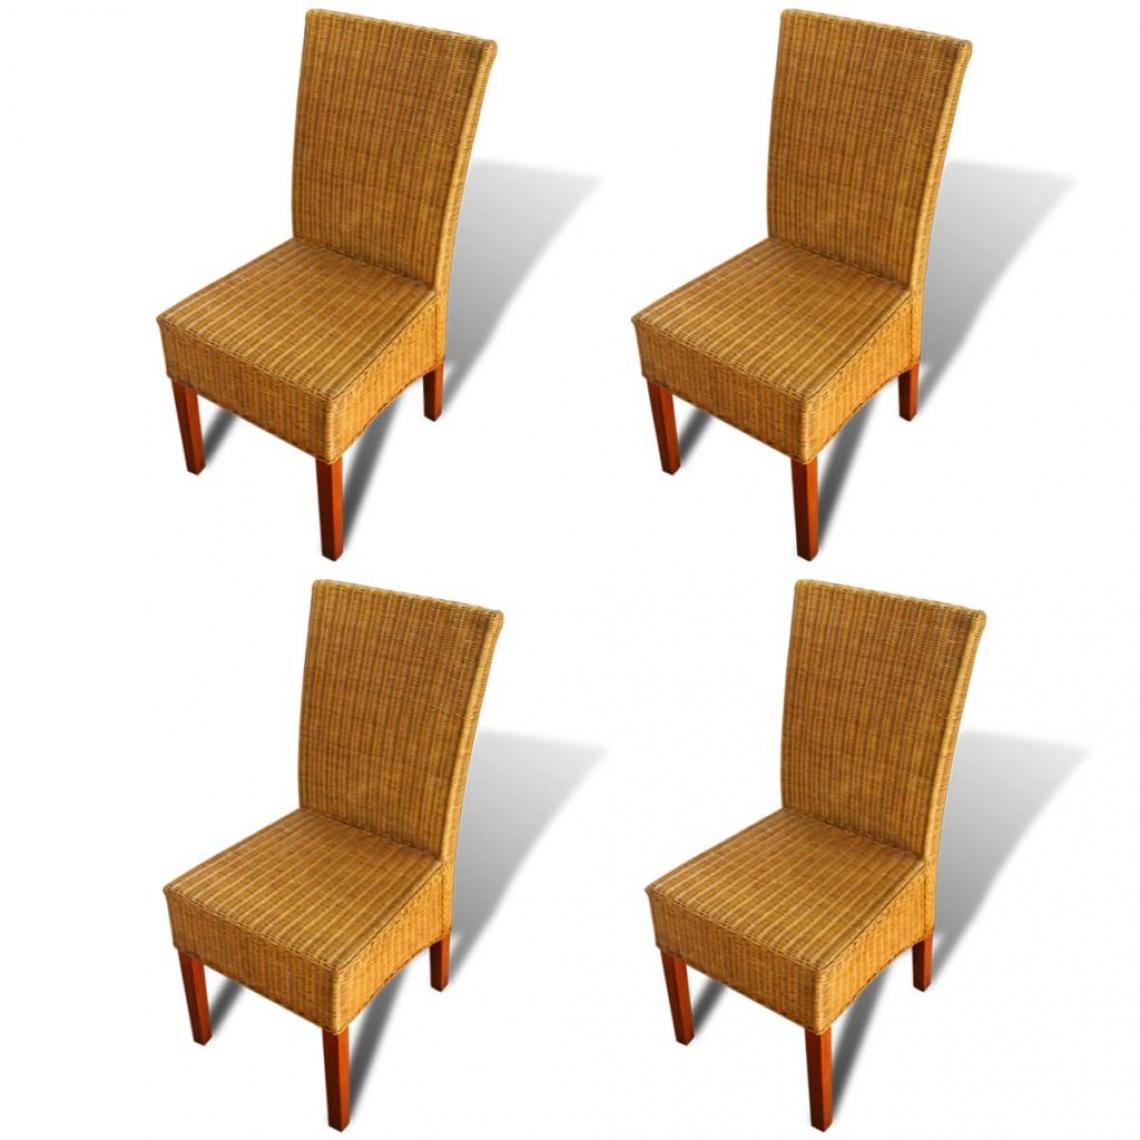 Decoshop26 - Lot de 4 chaises de salle à manger cuisine design classique rotin naturel marron CDS021699 - Chaises